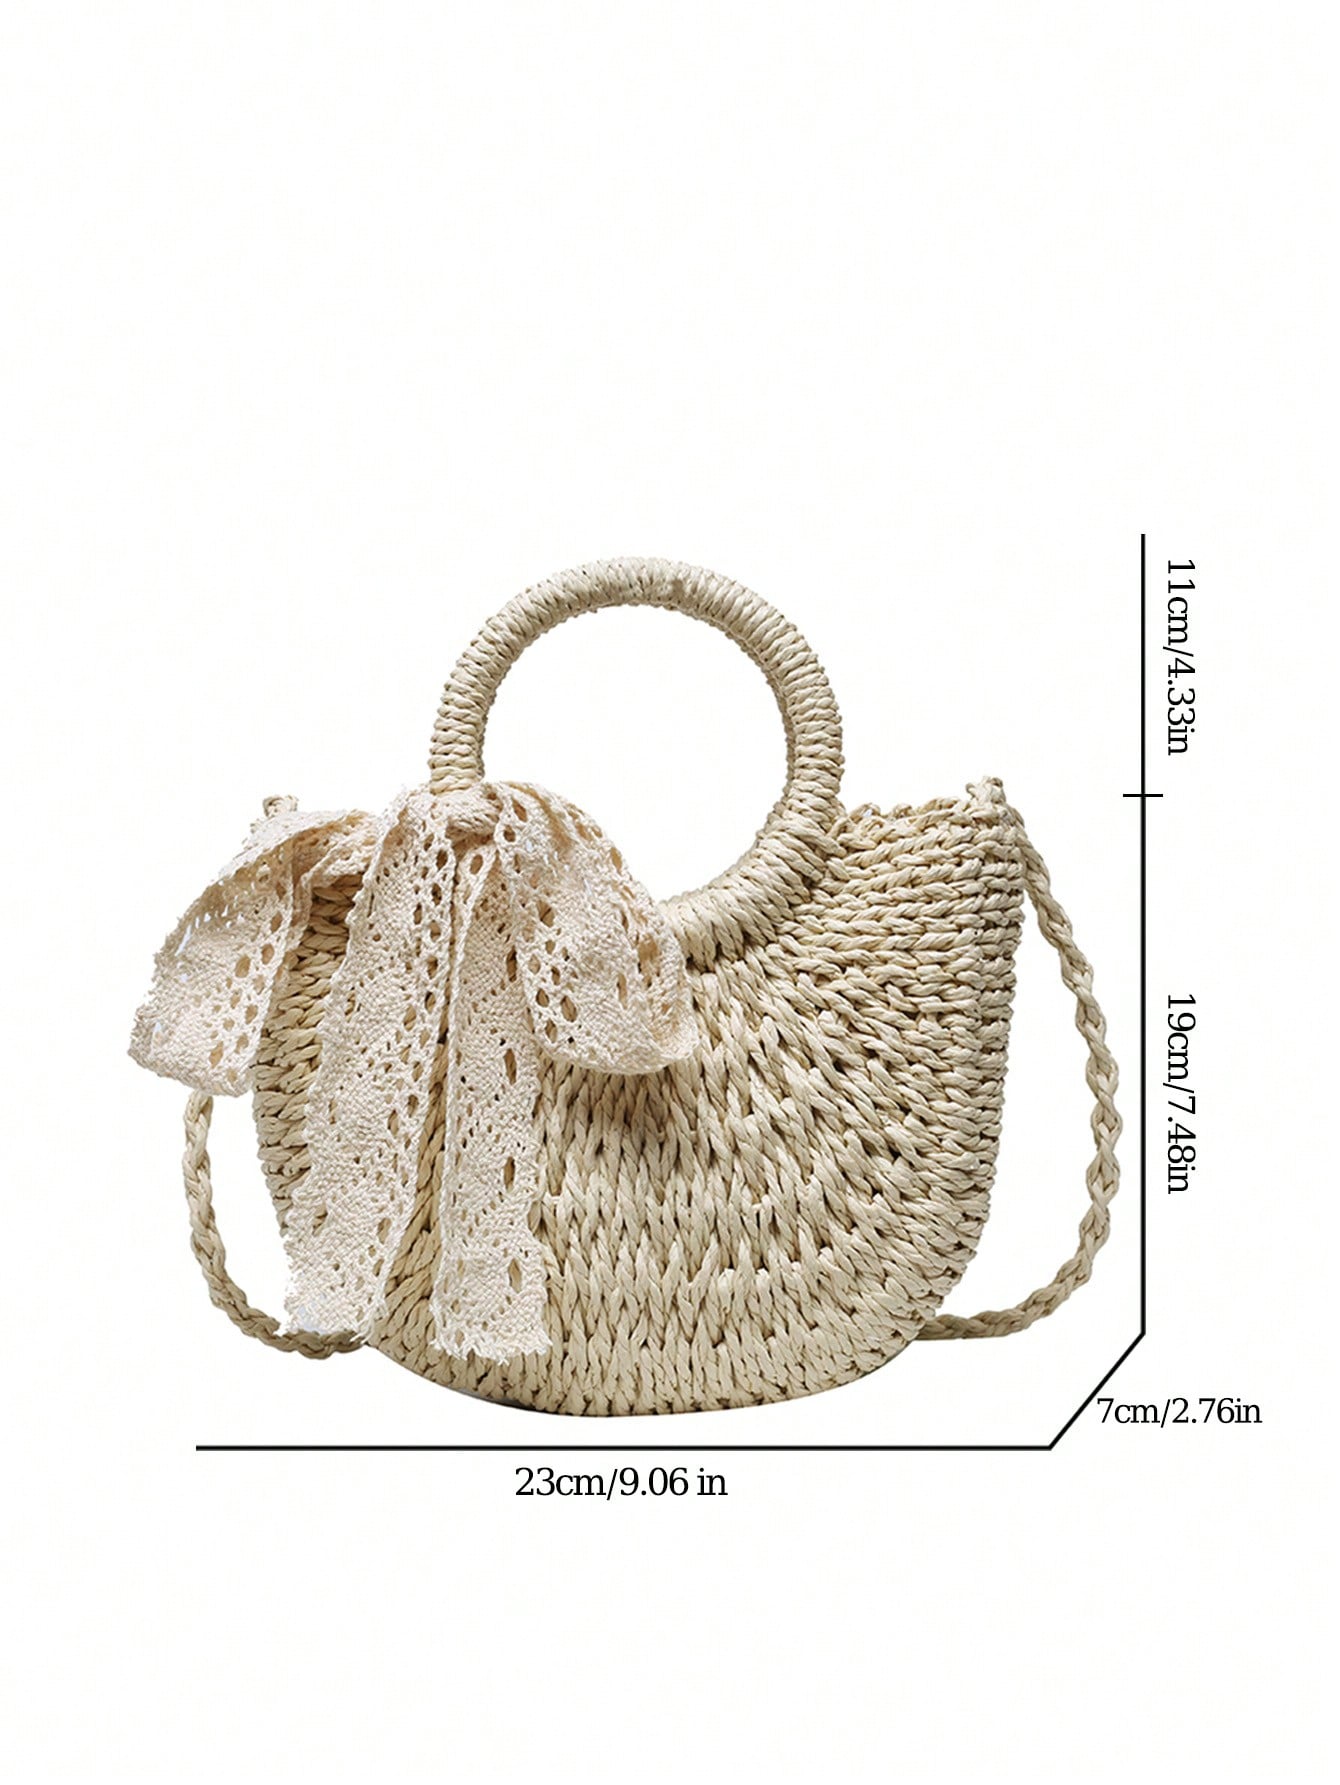 Соломенная сумка с круглой ручкой для женщин, бежевый плетеная сумка с кукурузной шелушкой модная сумка клатч праздничная сумка морская пляжная сумка сумка конверт женская сумка быстрая оп